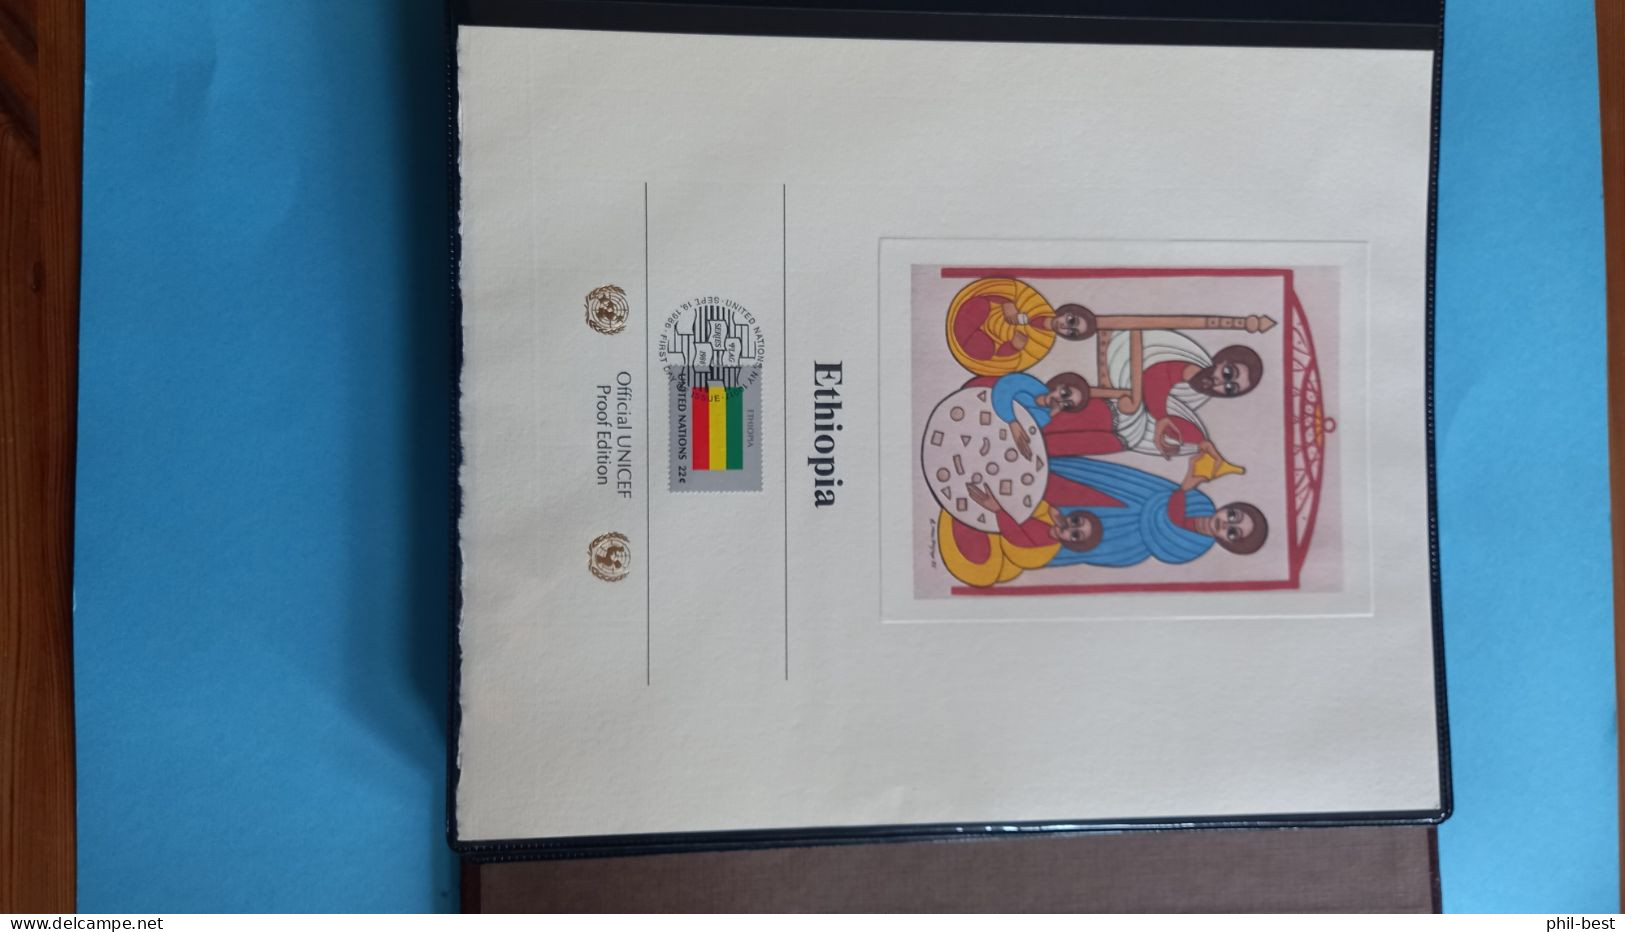 Unicef - 60 Ersttagsblätter Album UN Flaggen Flag Series, ESST s. Bilder #Alb192